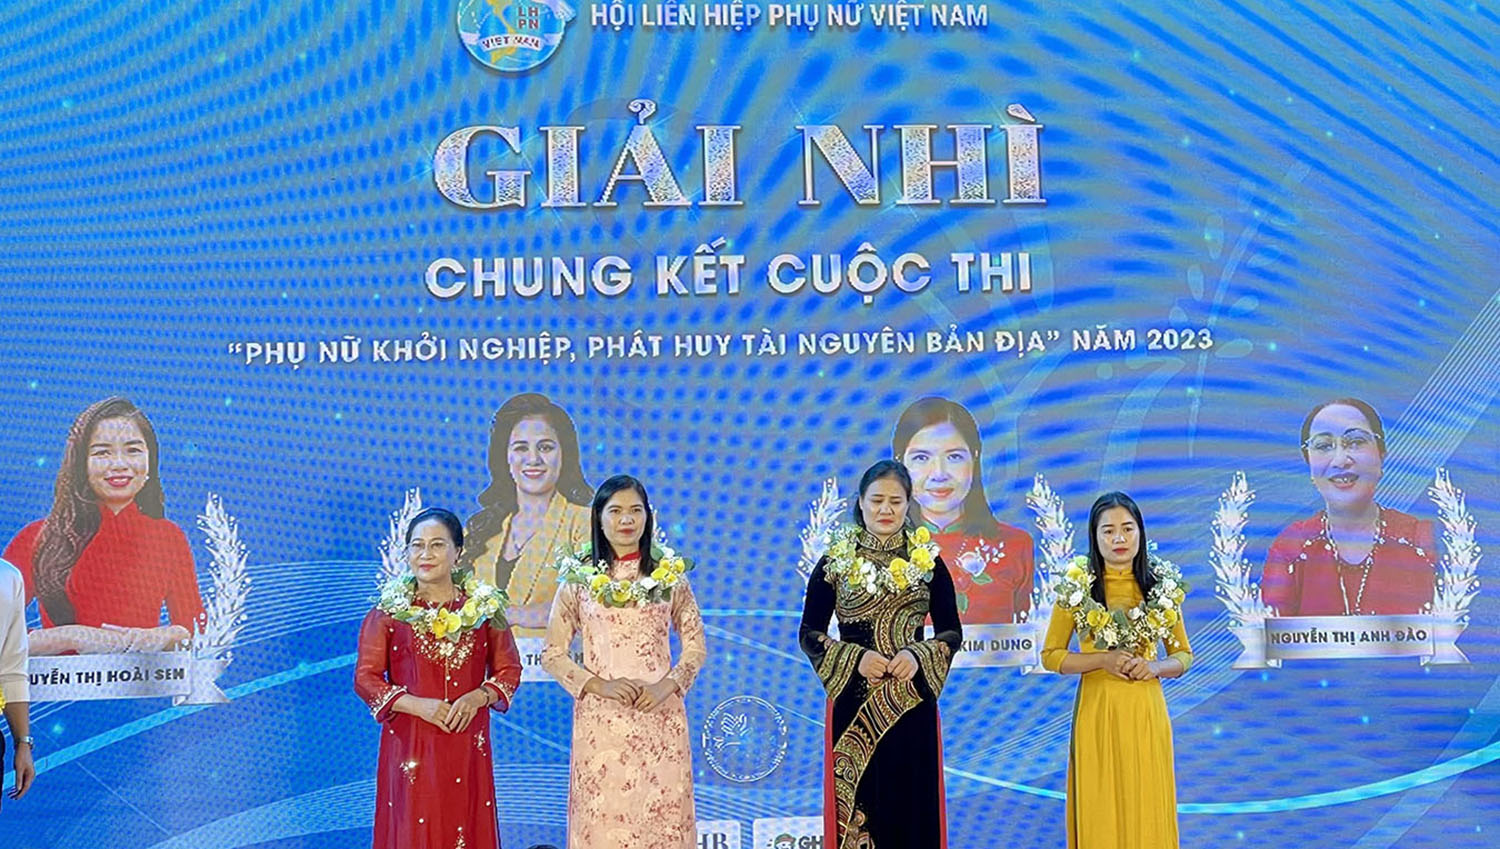 Thí sinh Quảng Bình đoạt giải nhì toàn quốc cuộc thi "Phụ nữ khởi nghiệp, phát huy tài nguyên bản địa" năm 2023